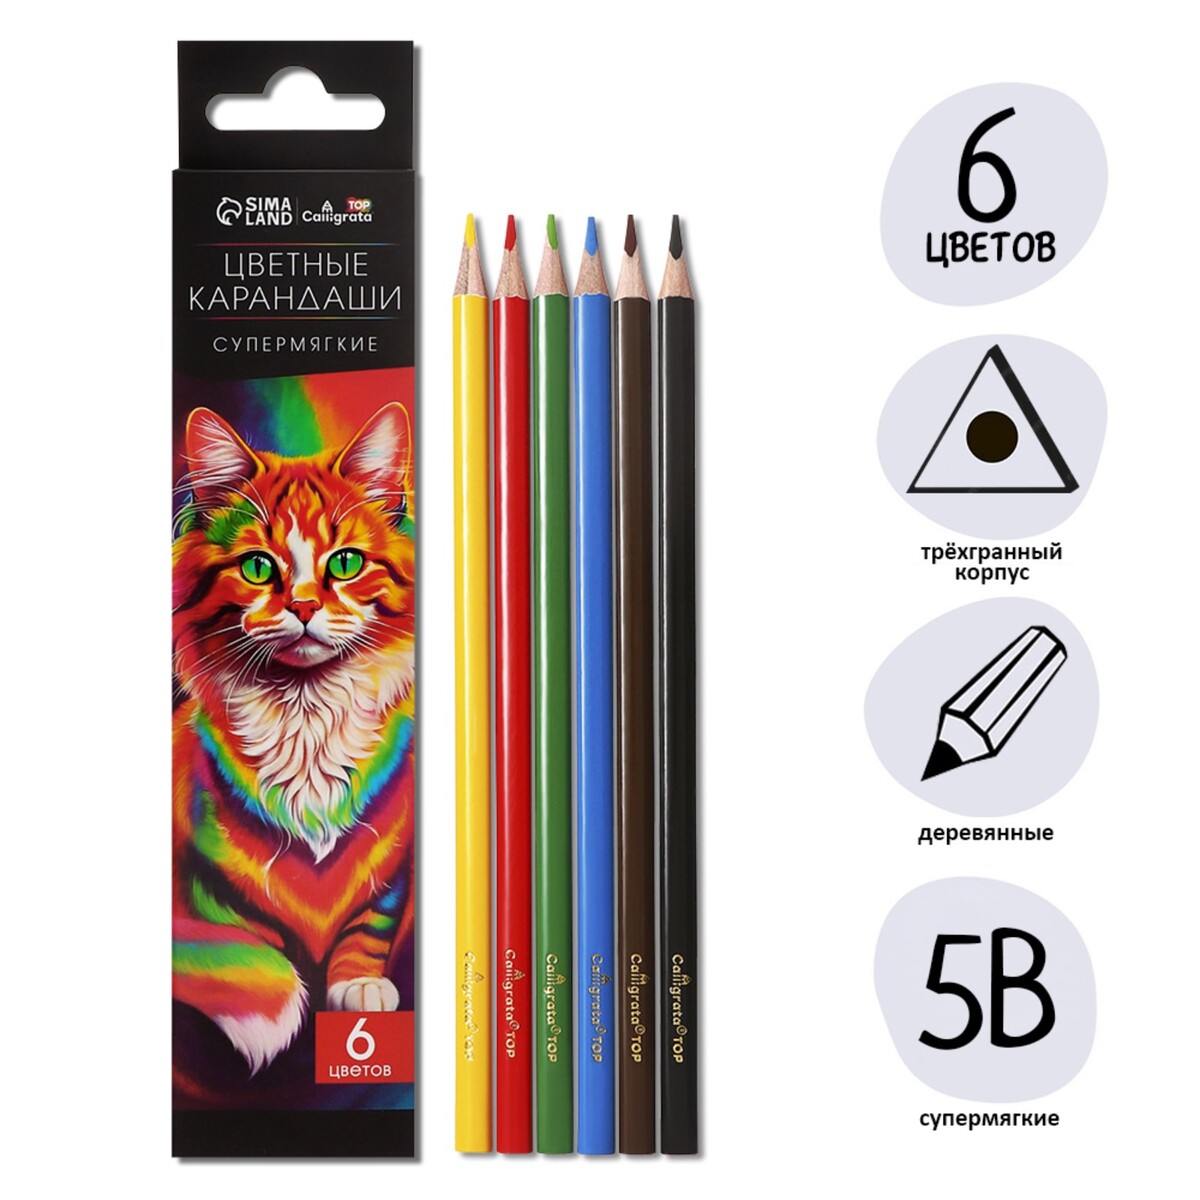 Карандаши 6 цветов top calligrata, в картонной коробке, диаметр грифеля - 3мм, 5b карандаши 6 ов мини в картонной коробке